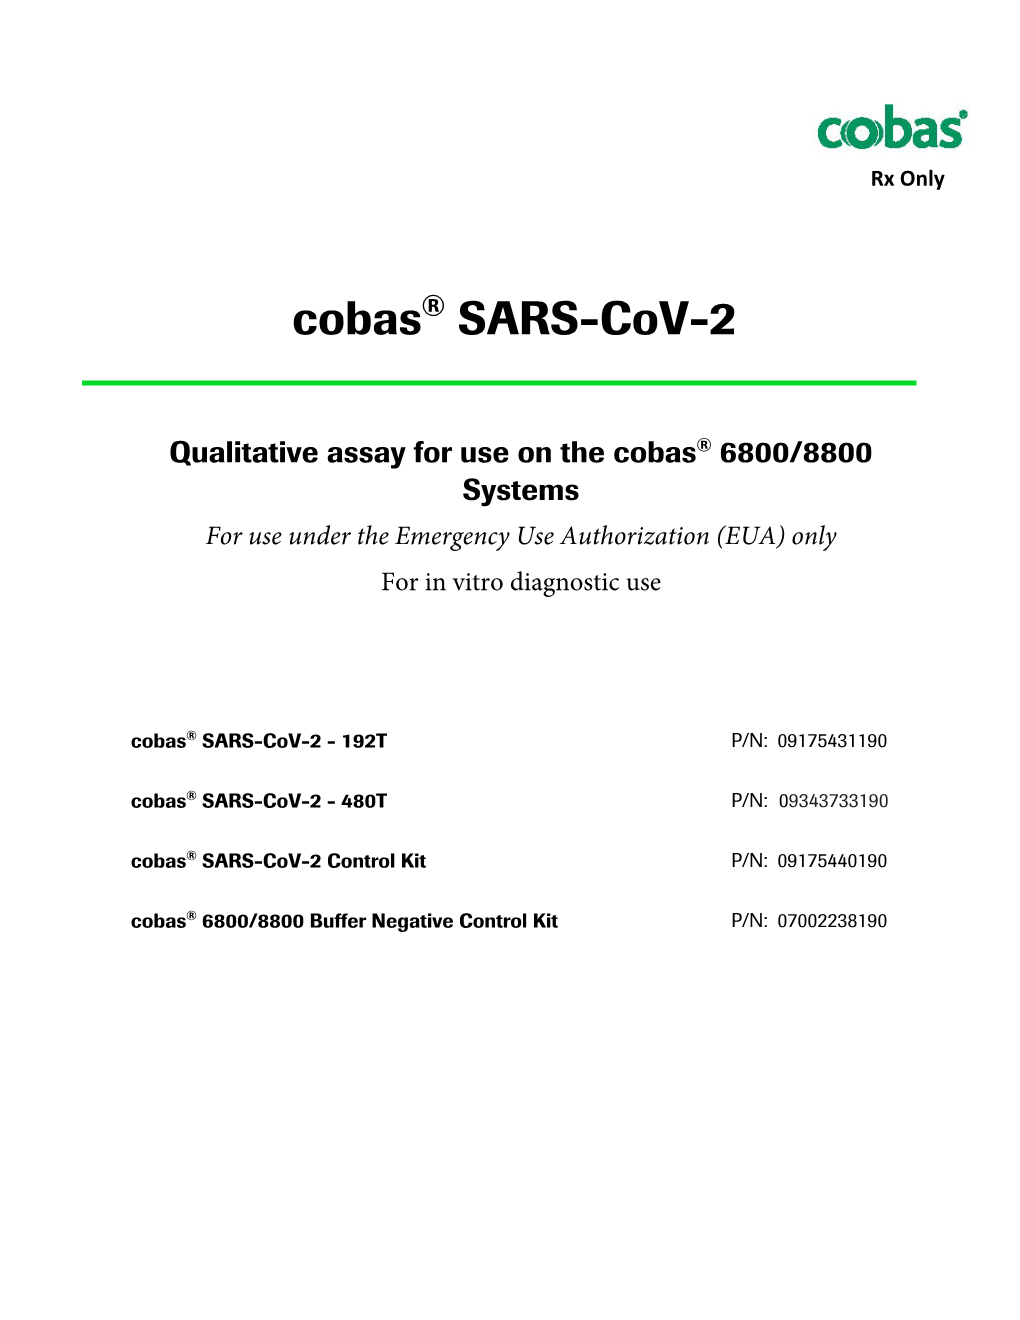 Cobas SARS-Cov-2 Instructions For